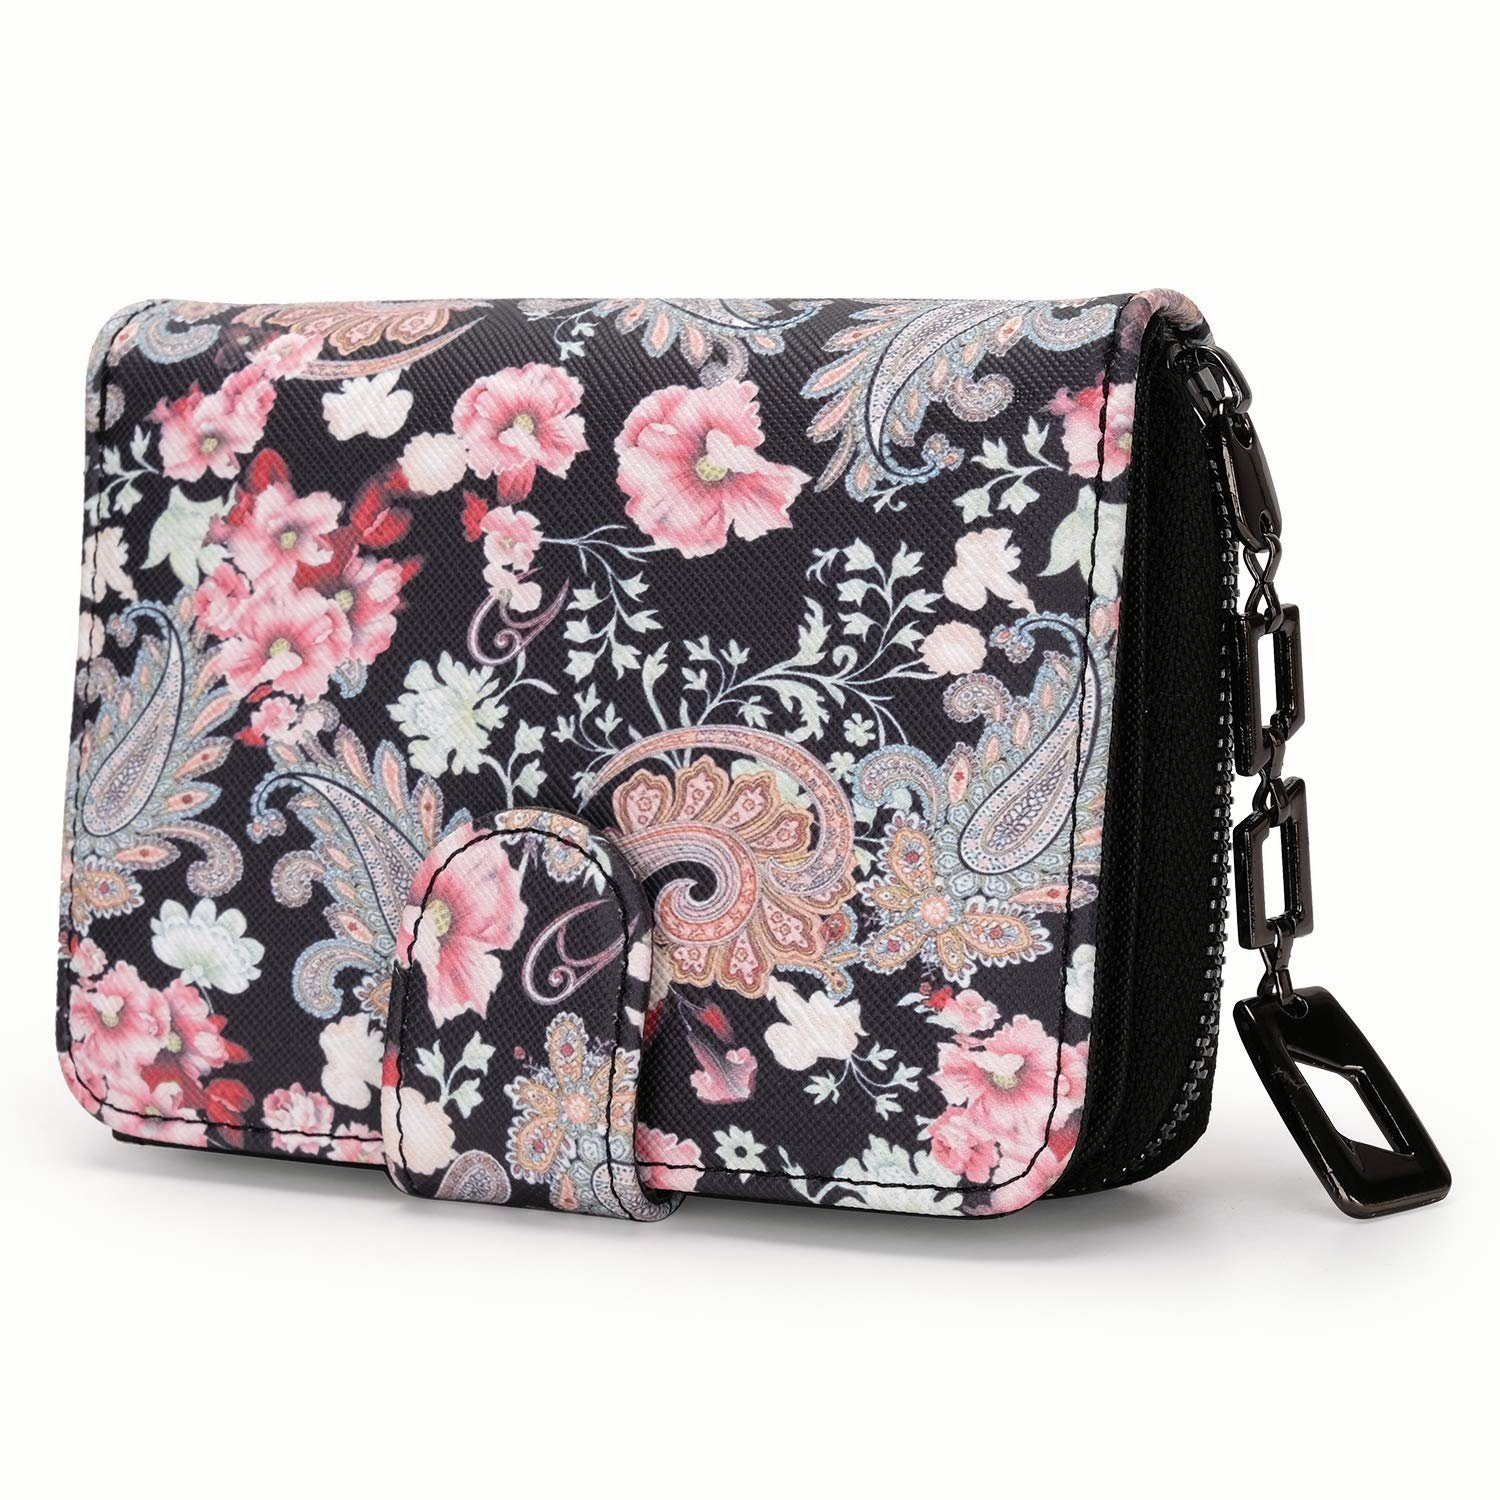 TAN.TOMI Brieftasche Geldbeutel mit Blumen- und Blütenmuster im Mandala Stil, Praktische Aufteilung mit viel Platz Floral Dream